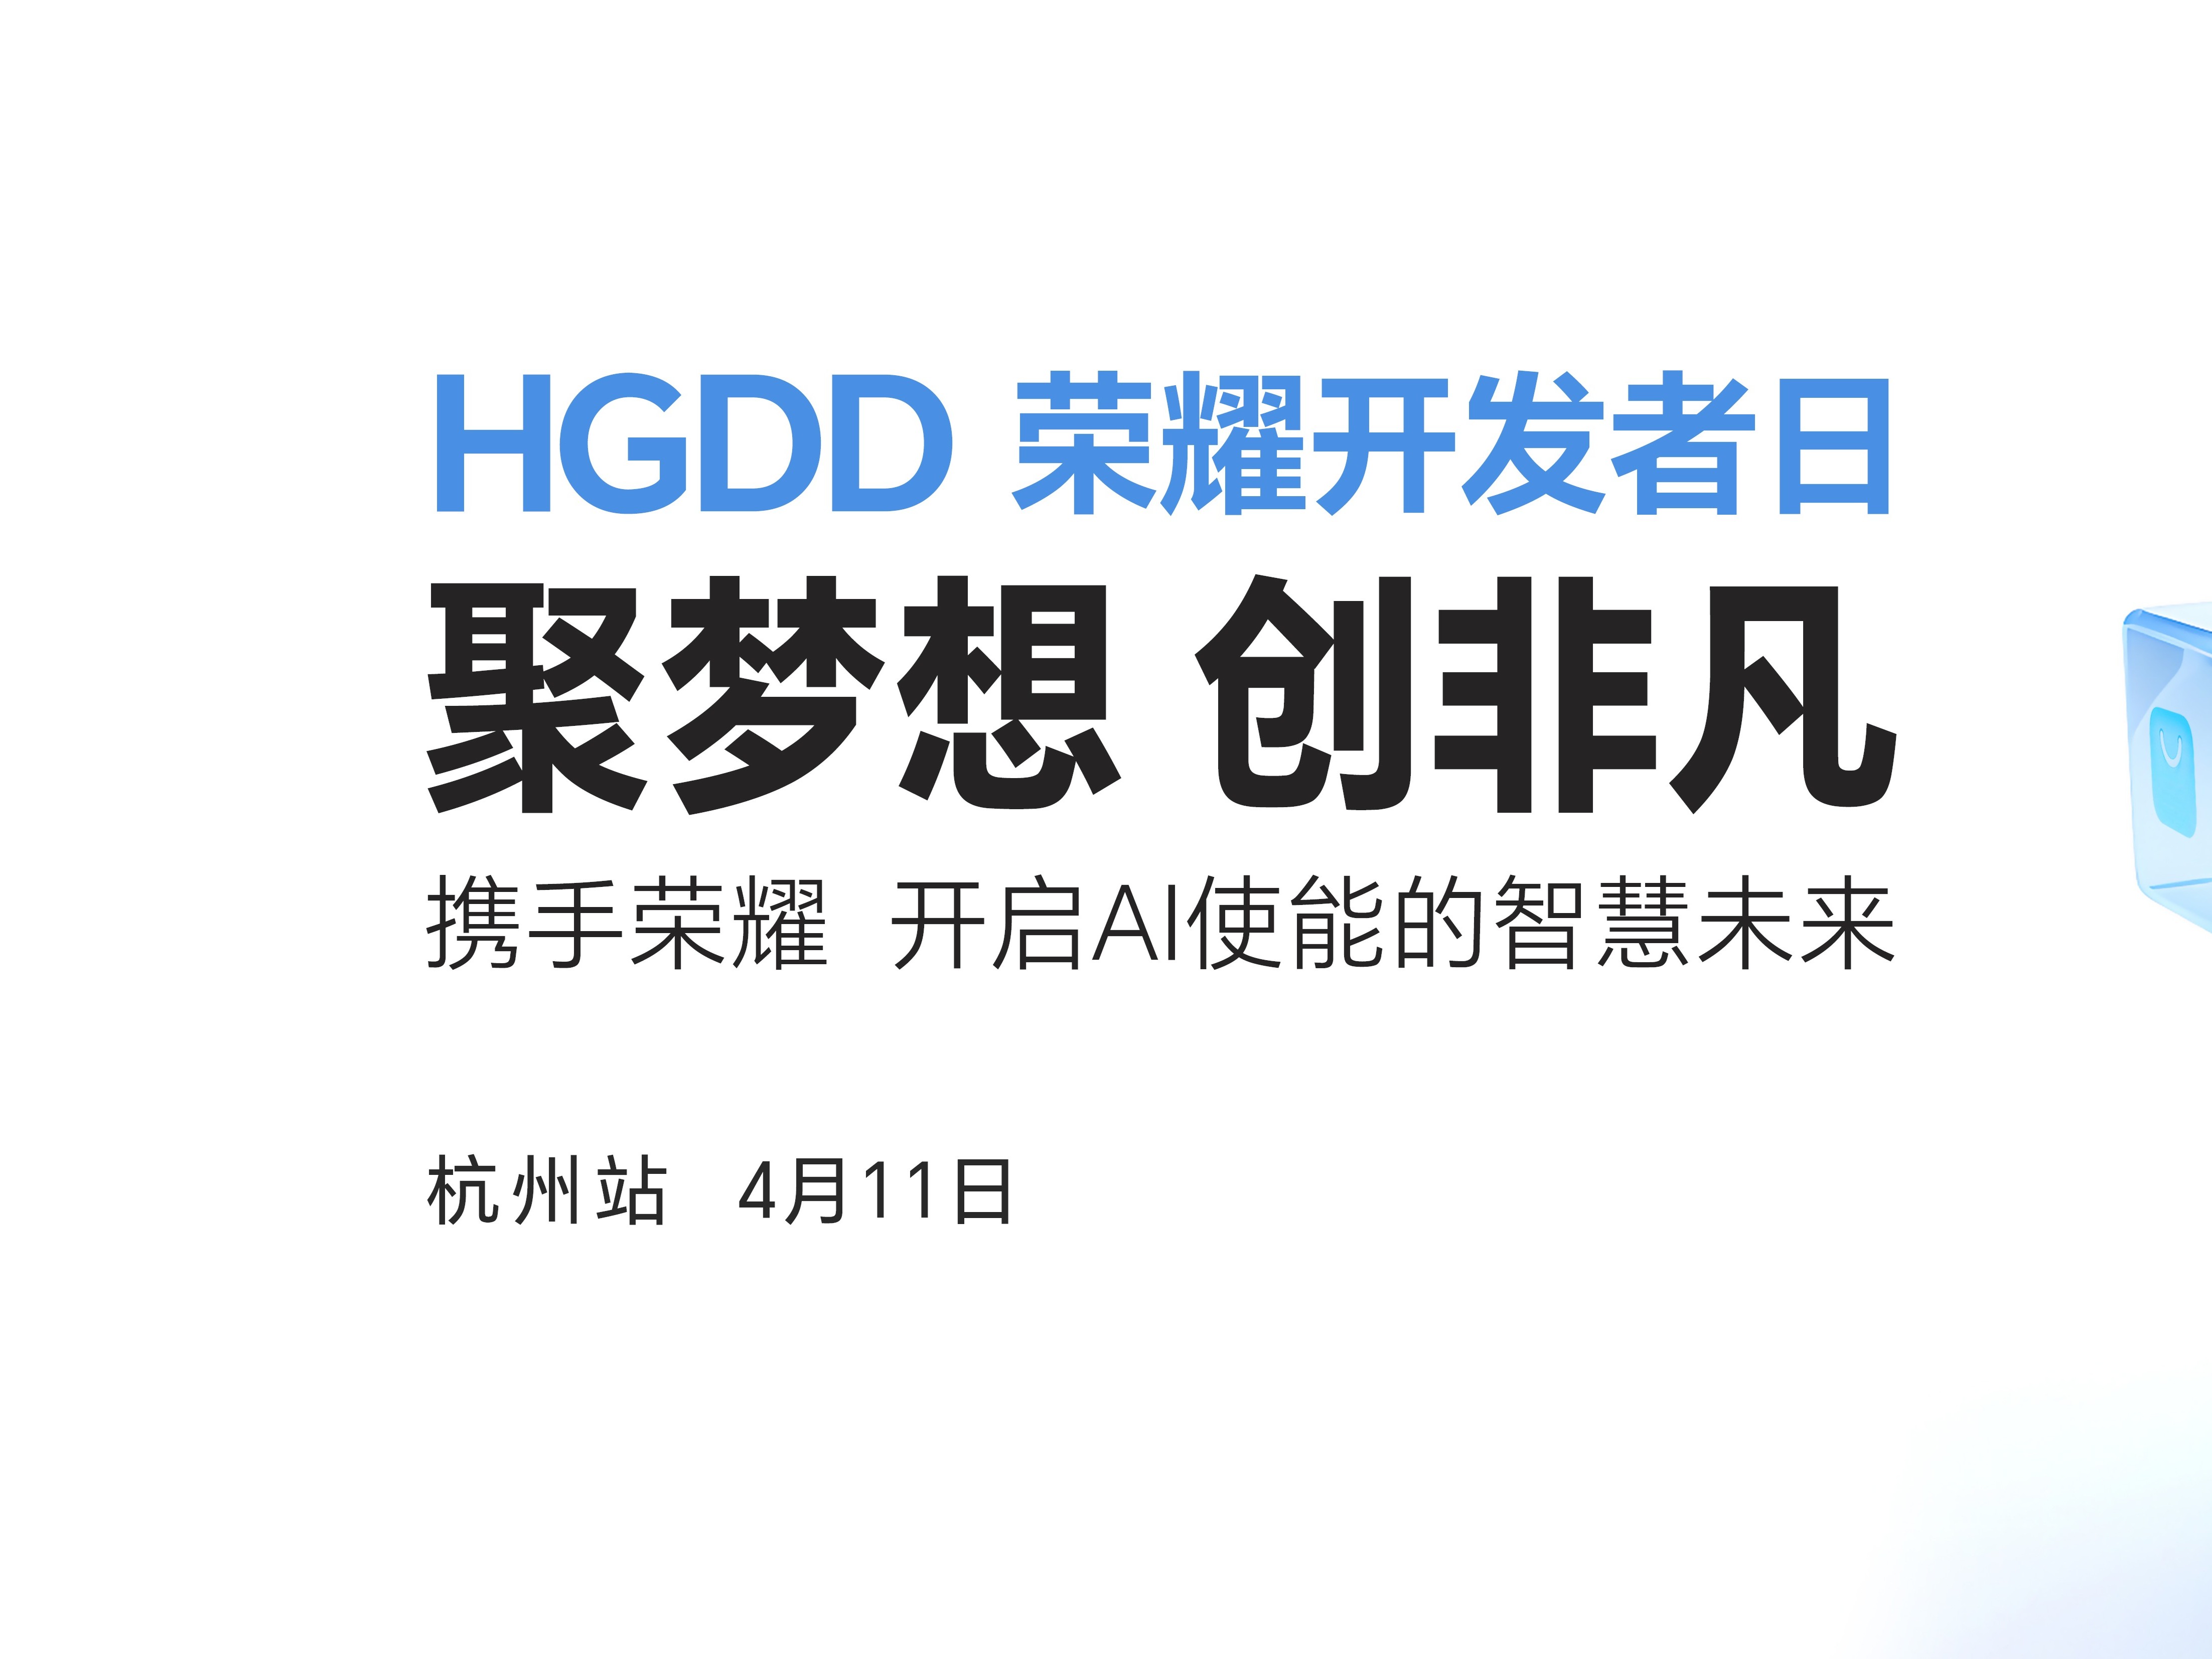 报名开启！首届HGDD荣耀开发者日4月11日相约杭州